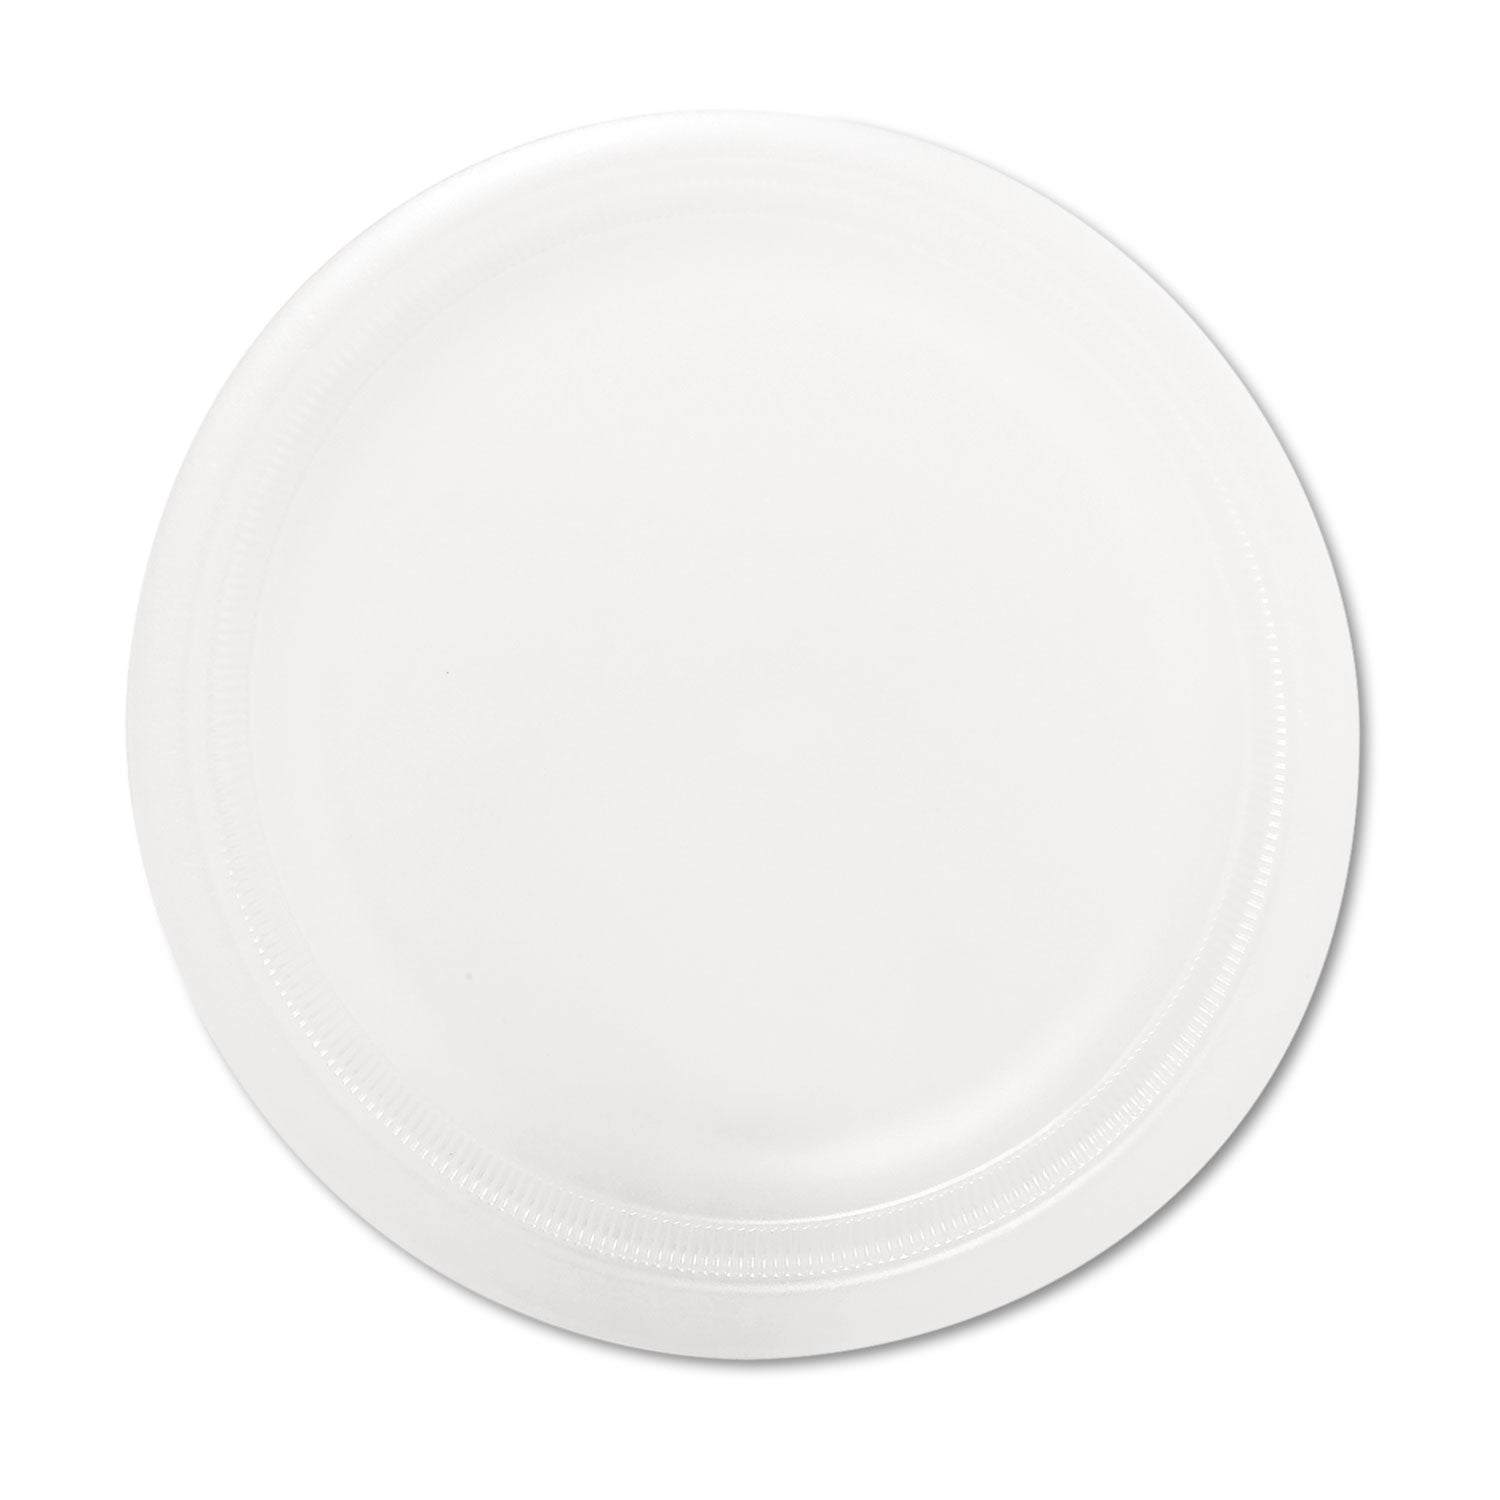 Quiet Classic Laminated Foam Dinnerware Plate, 9" dia, White, 125/Pack - 